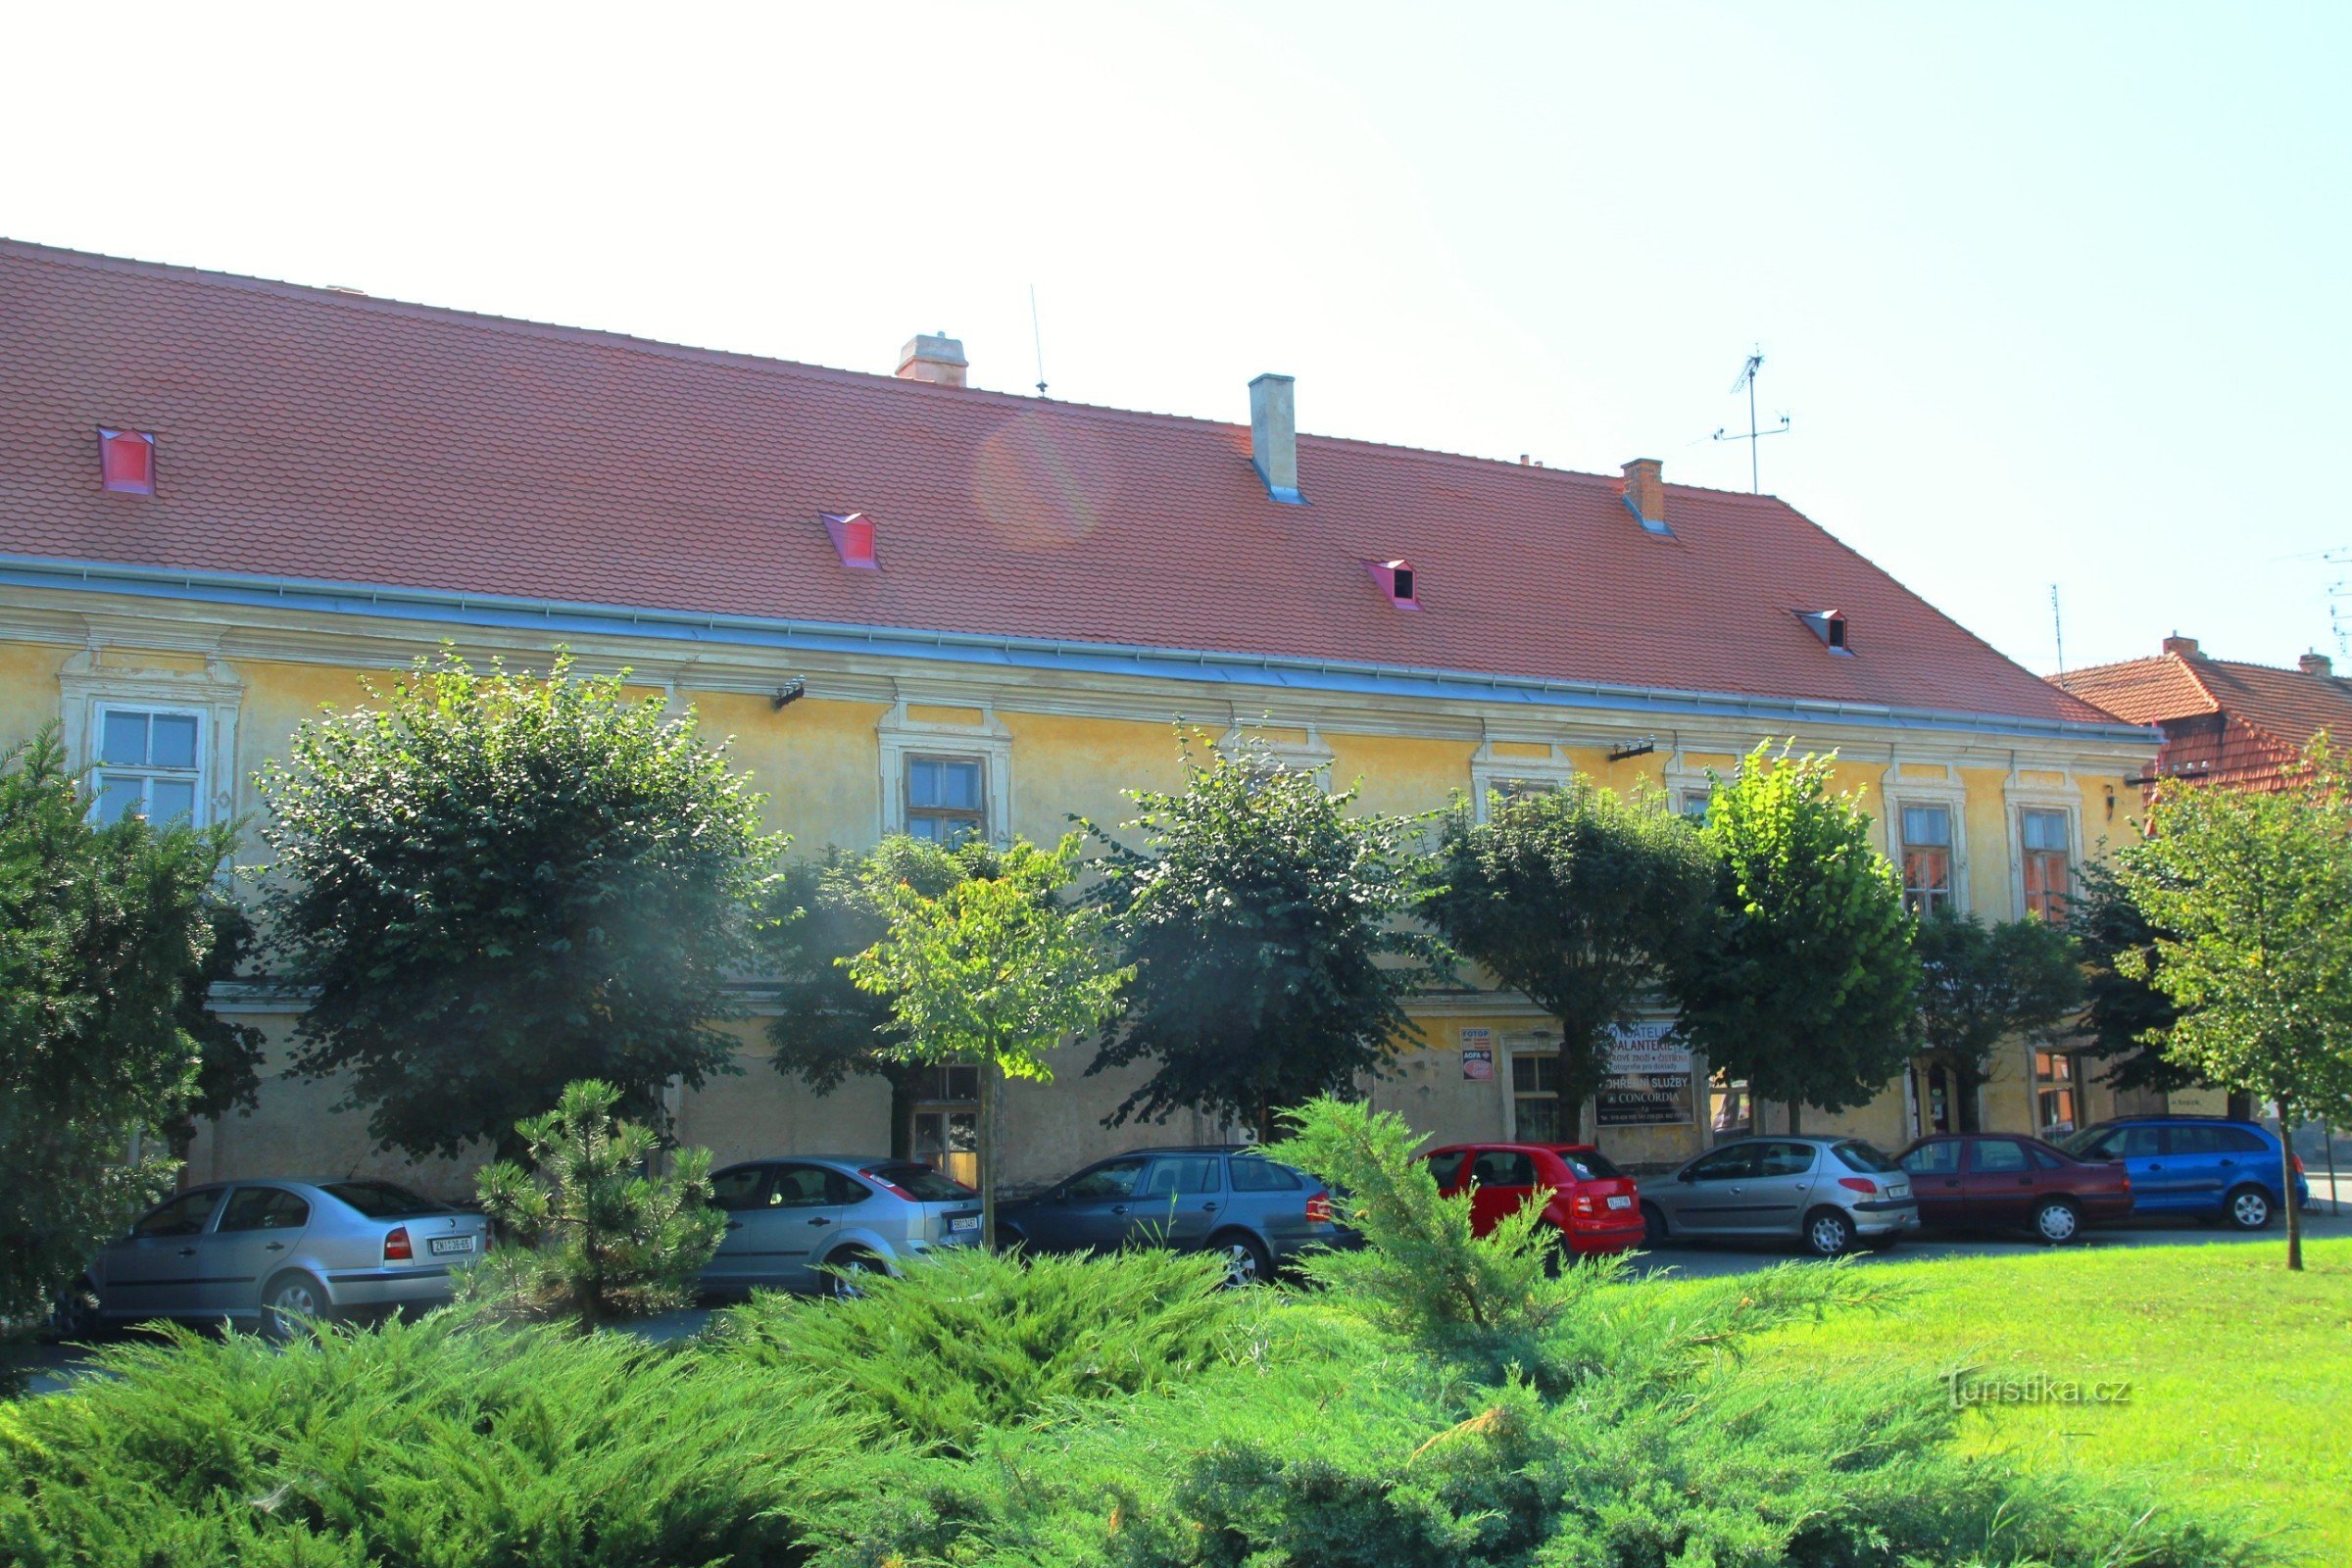 Pohořelice - khách sạn Pfann trước đây, nhìn từ quảng trường Svoboda